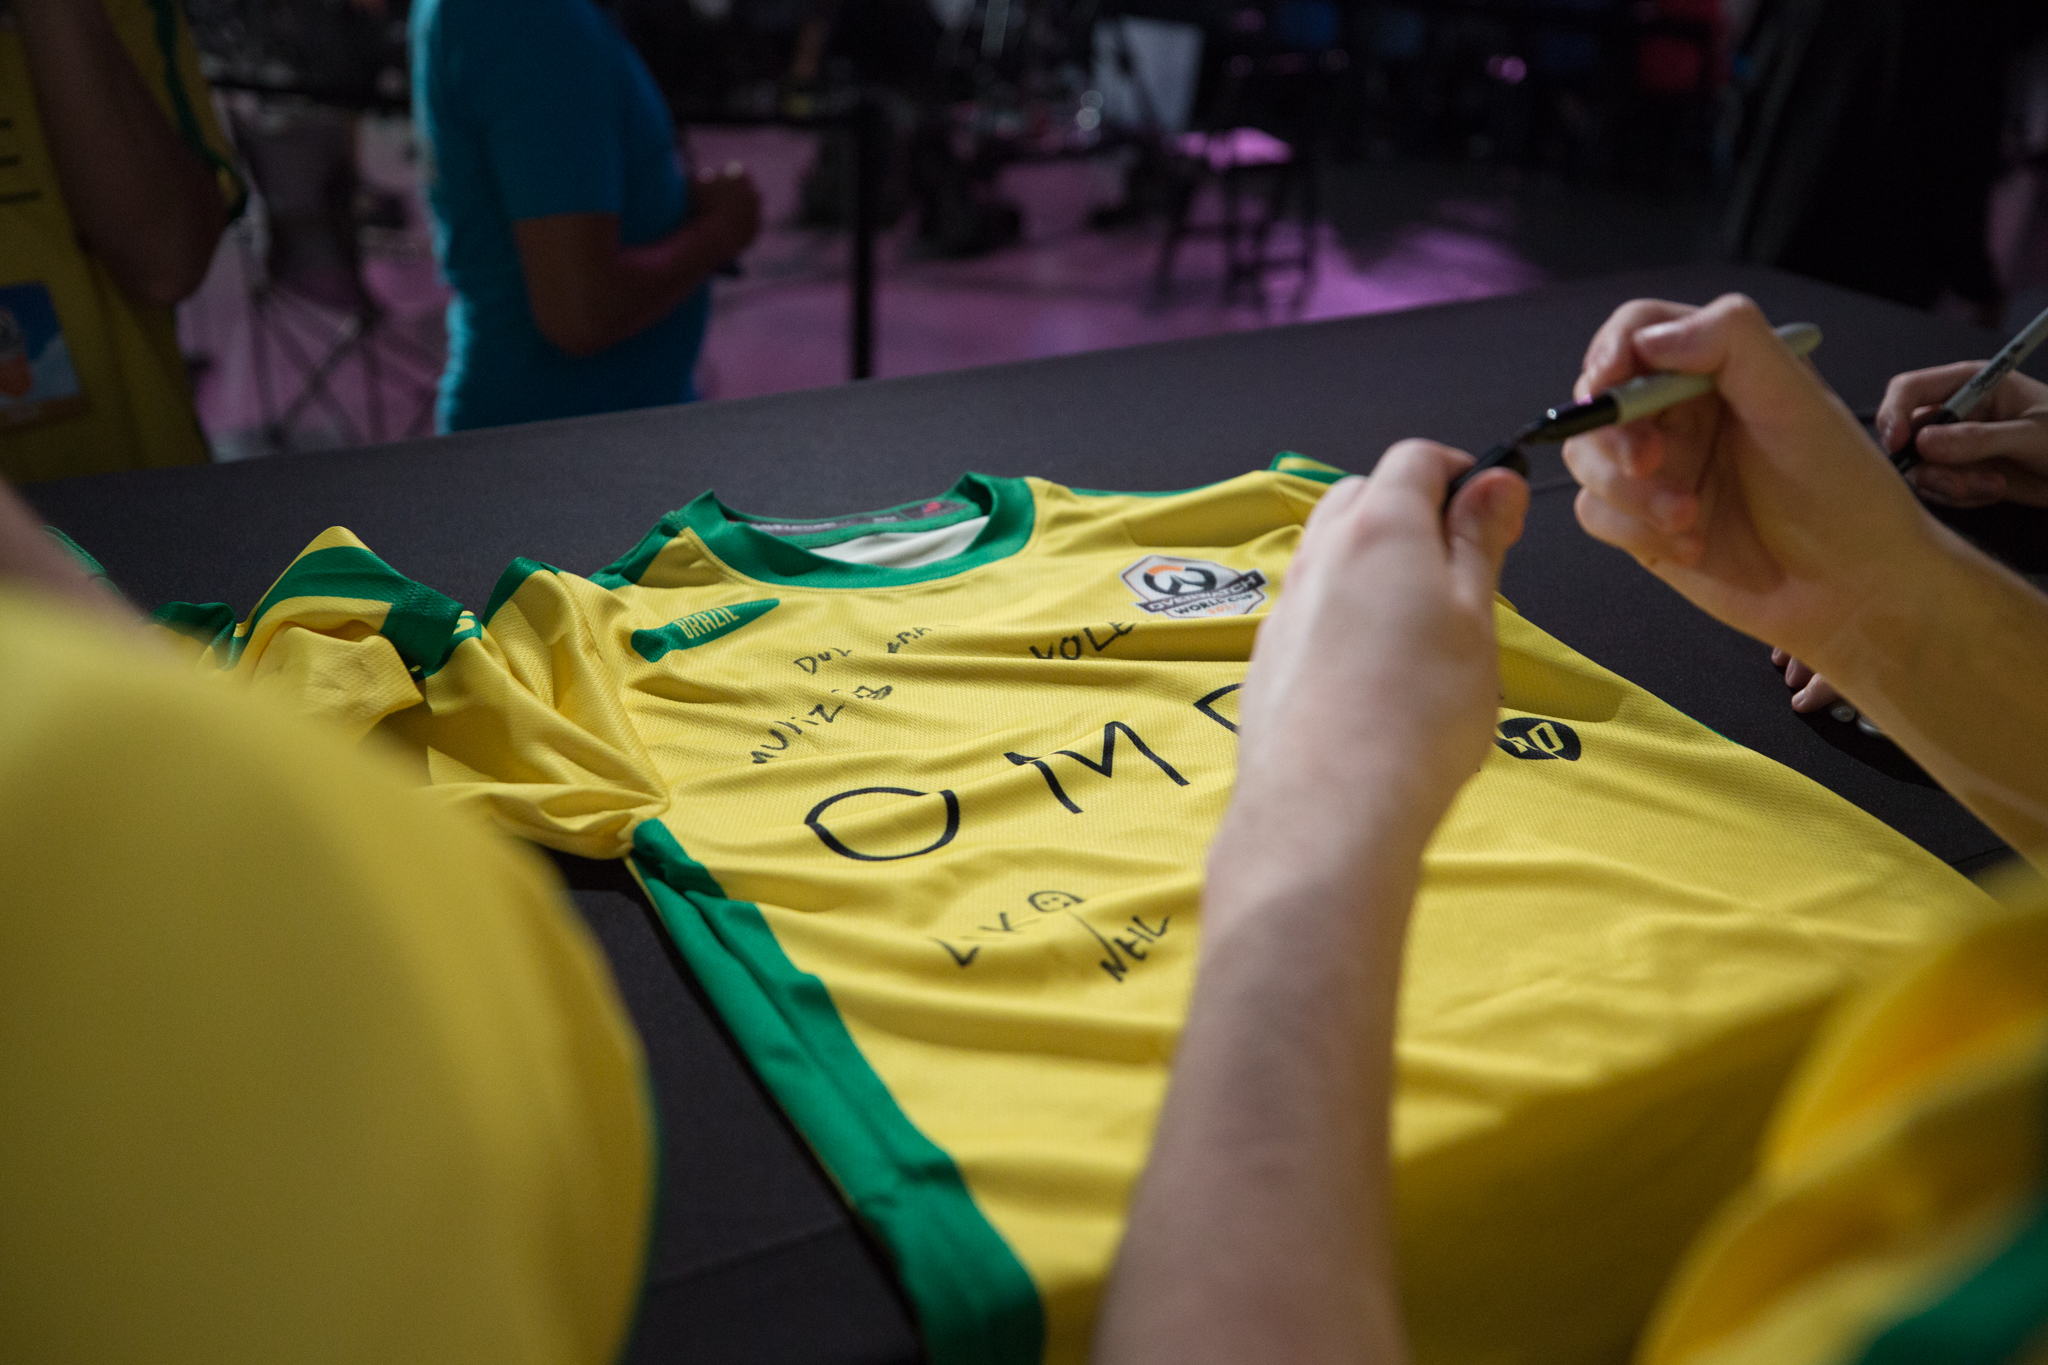 Overwatch: A convocação da Seleção Brasileira e a importância da Copa do  Mundo para o cenário! - Mais Esports